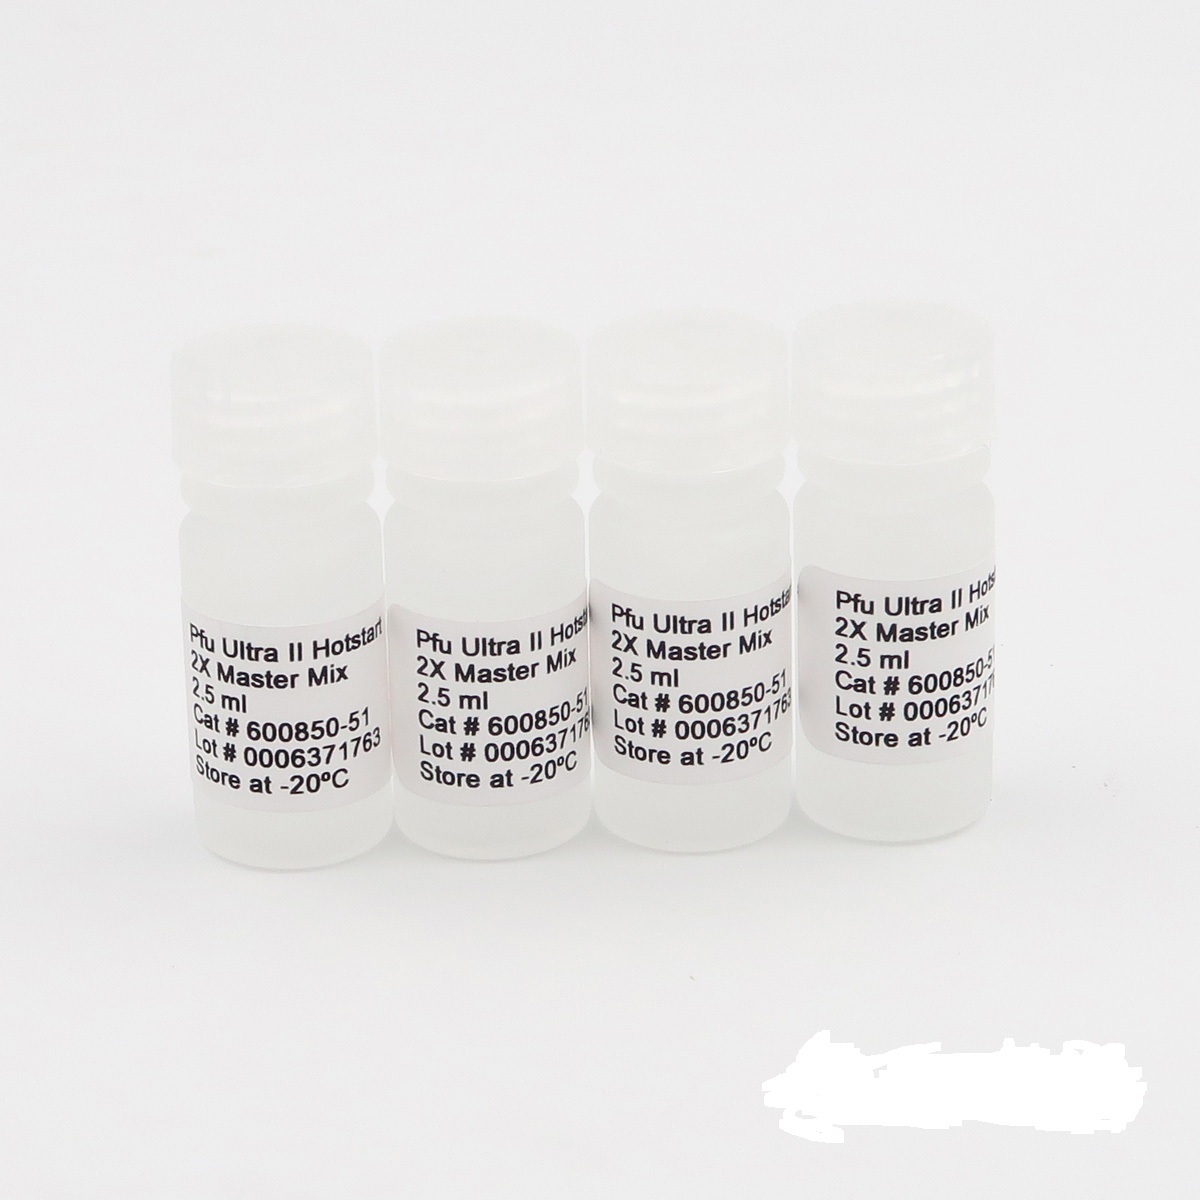 鳞球茎茎线虫PCR试剂盒